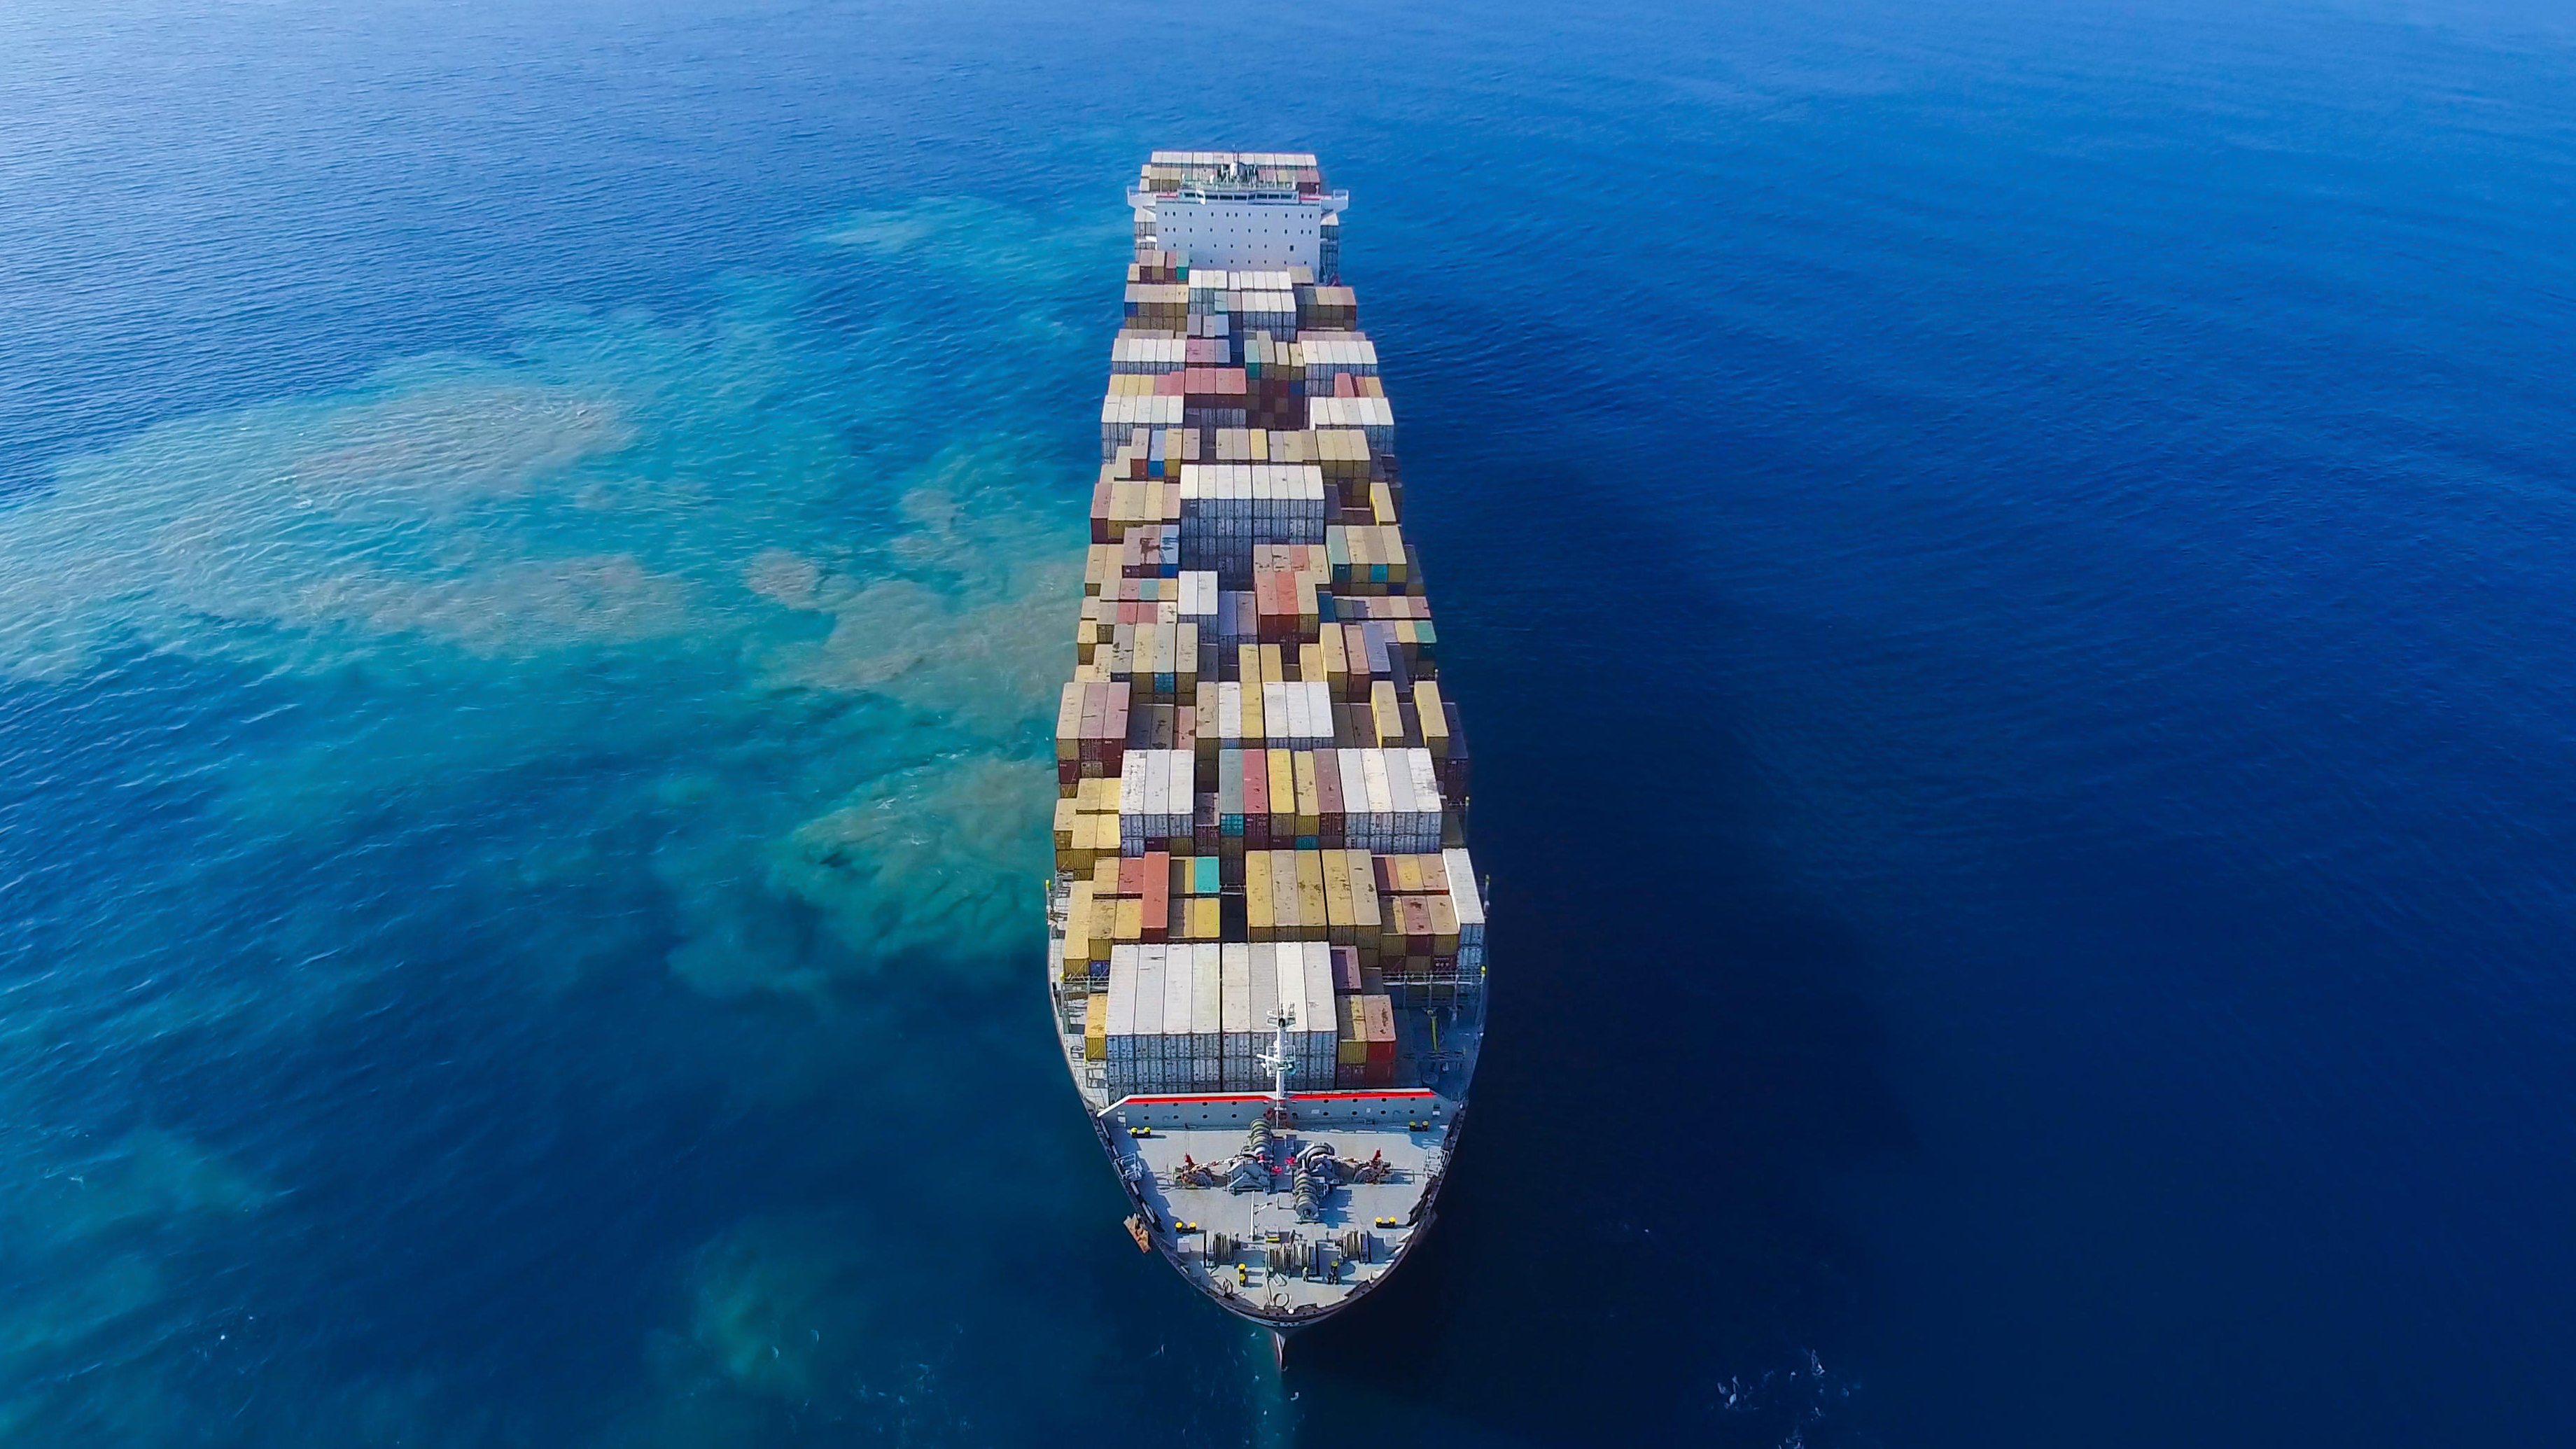 Pomorski tovor |Cene tovora v Zalivu in Južni Ameriki rastejo, medtem ko poti Azija-Evropa in ZDA slabijo